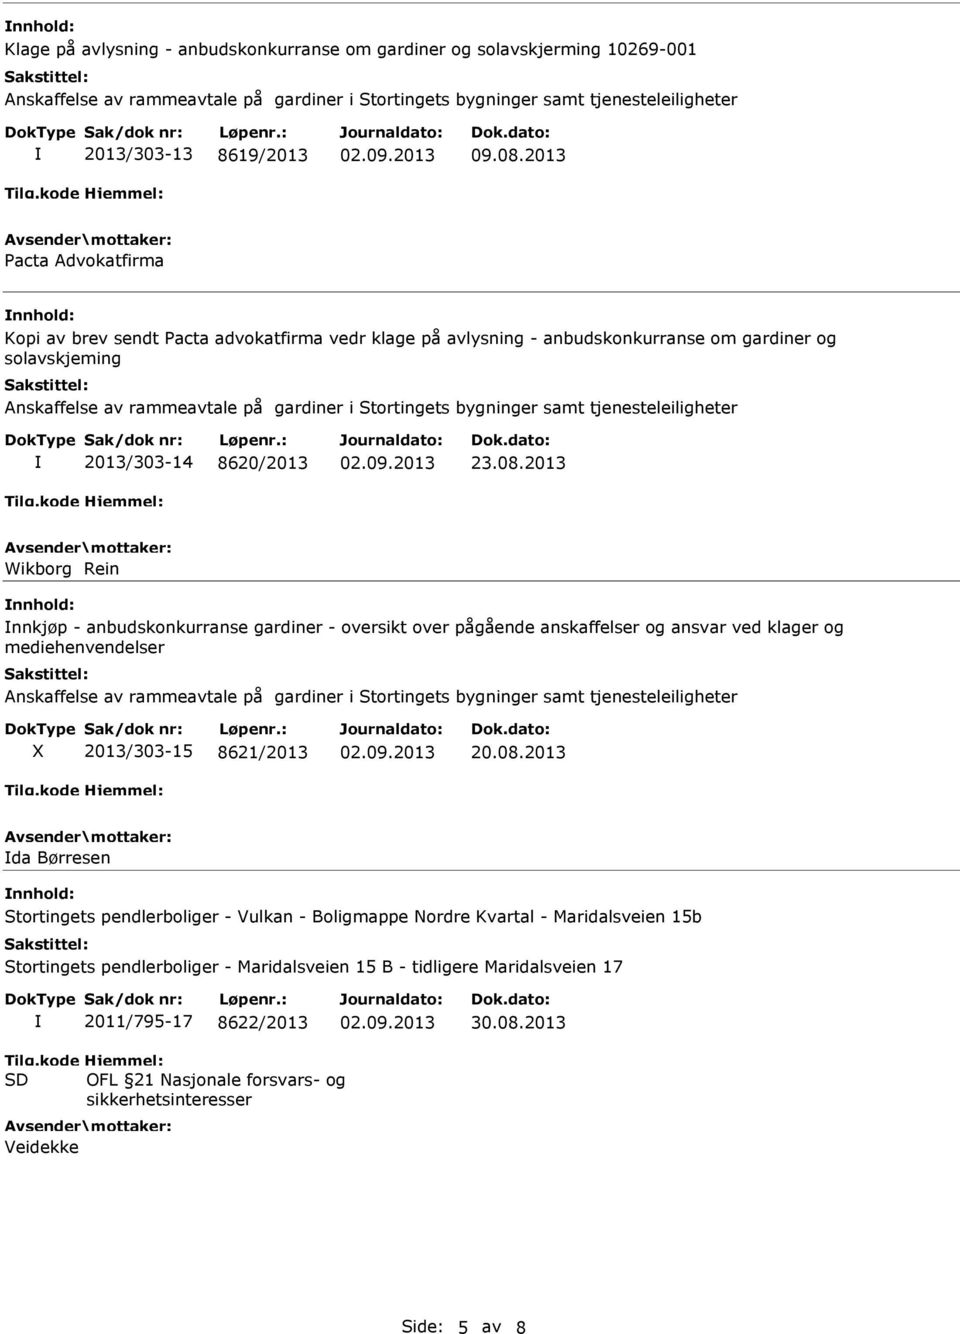 2013 Wikborg Rein nnkjøp - anbudskonkurranse gardiner - oversikt over pågående anskaffelser og ansvar ved klager og mediehenvendelser 2013/303-15 8621/2013 20.08.